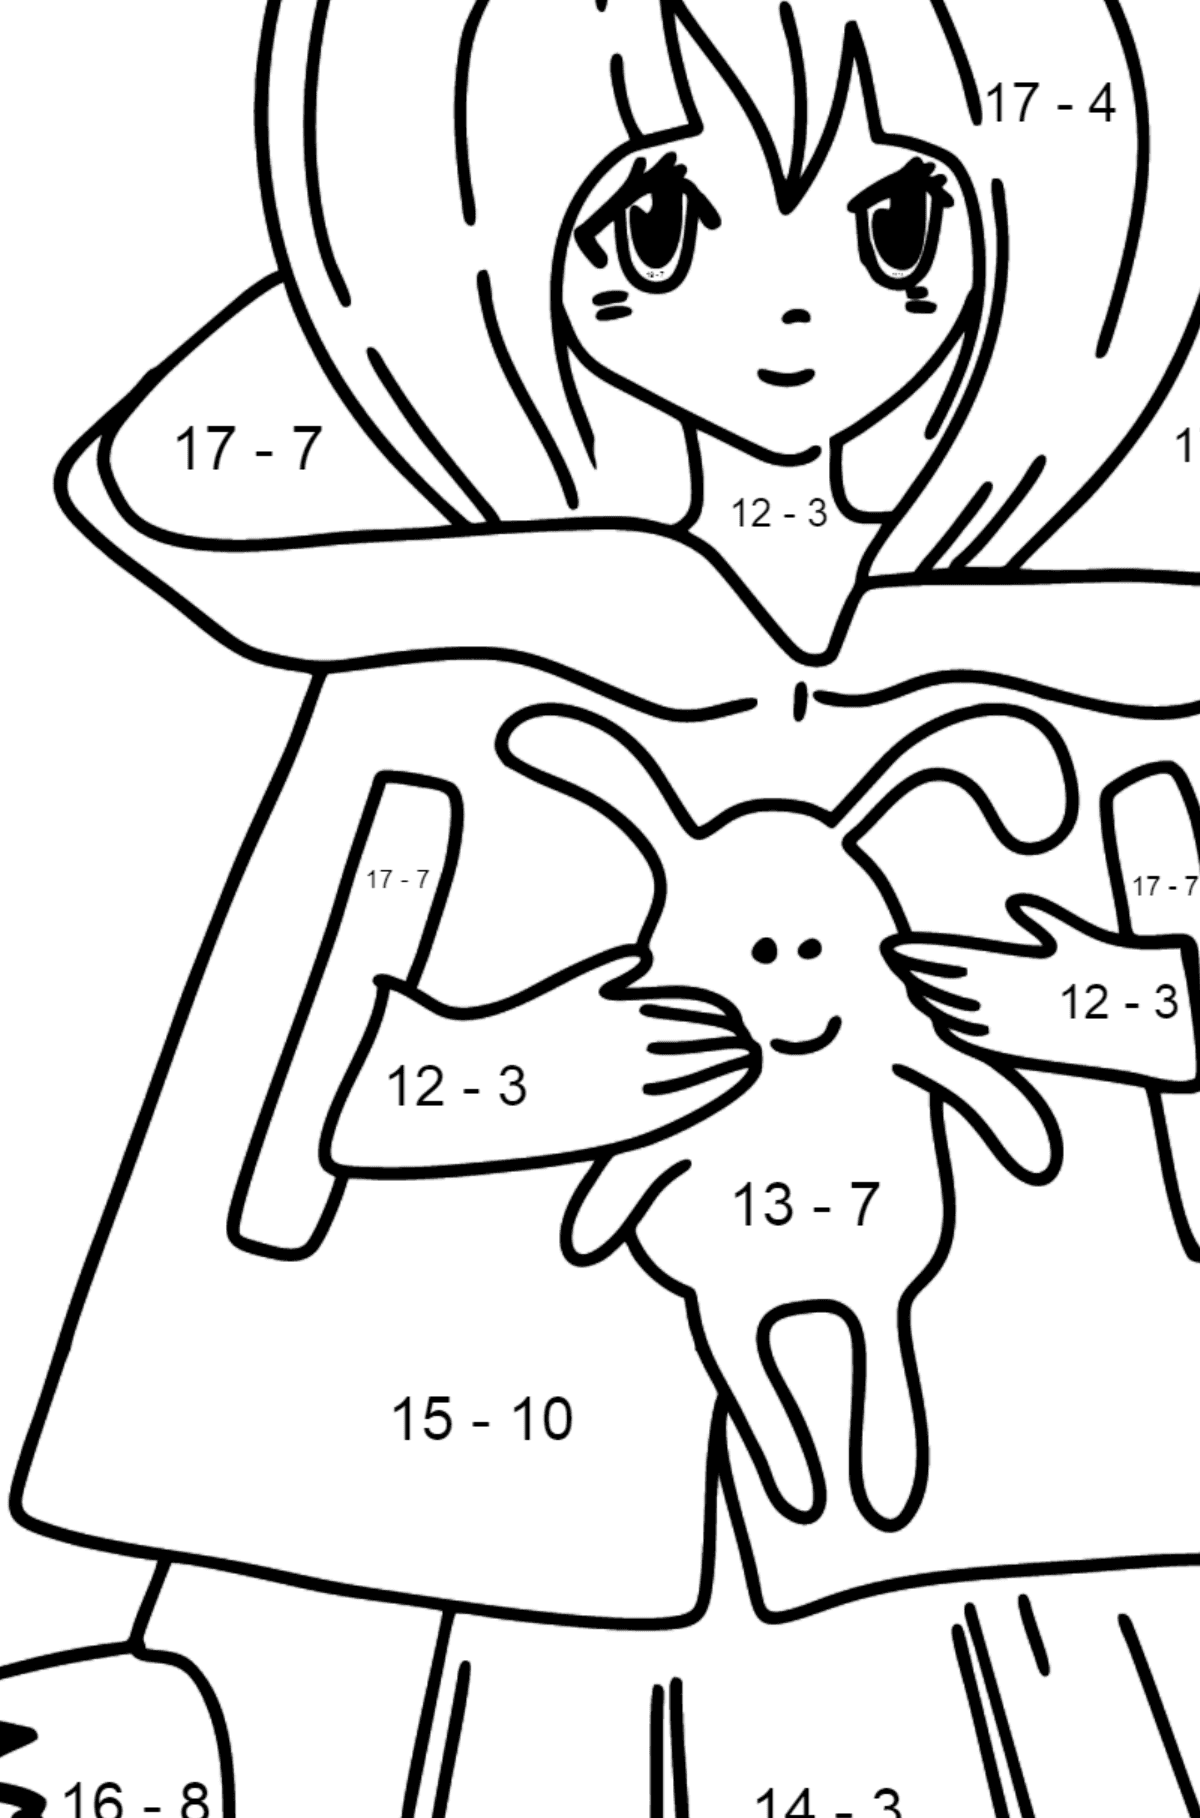 Anime meisje met staart kleurplaat - Wiskunde kleurplaten - aftrekken voor kinderen